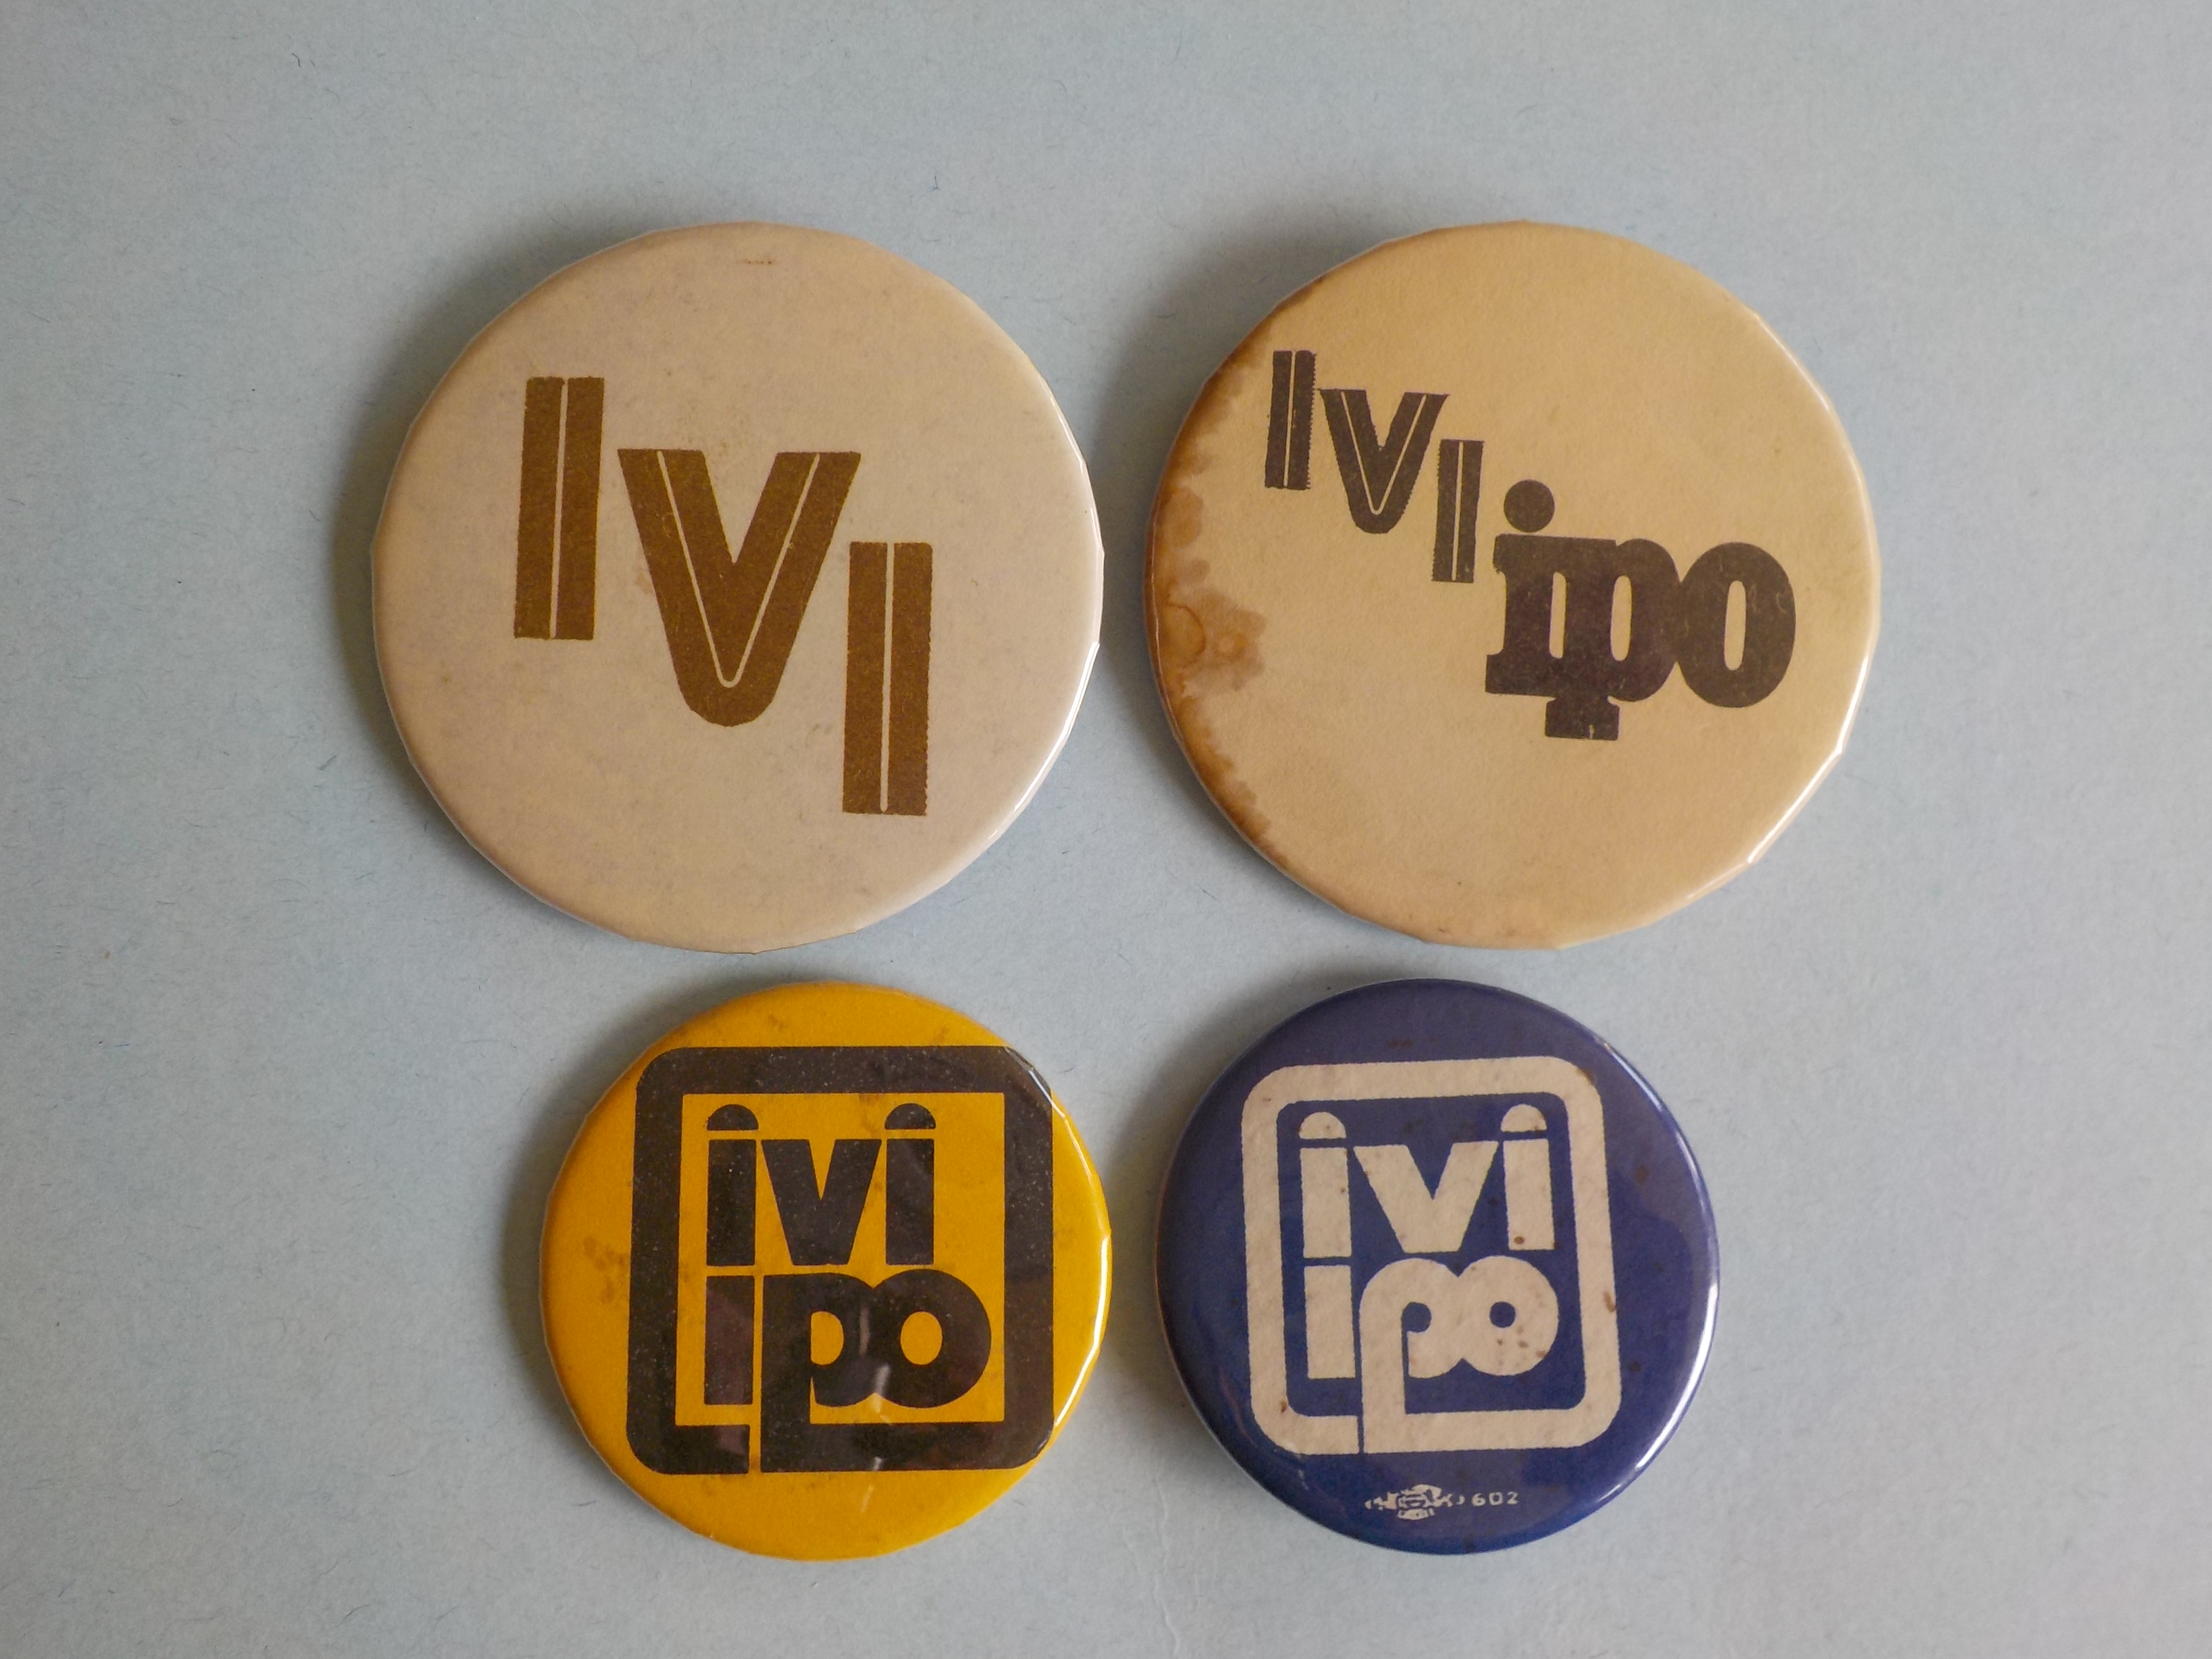 IVI-IPO